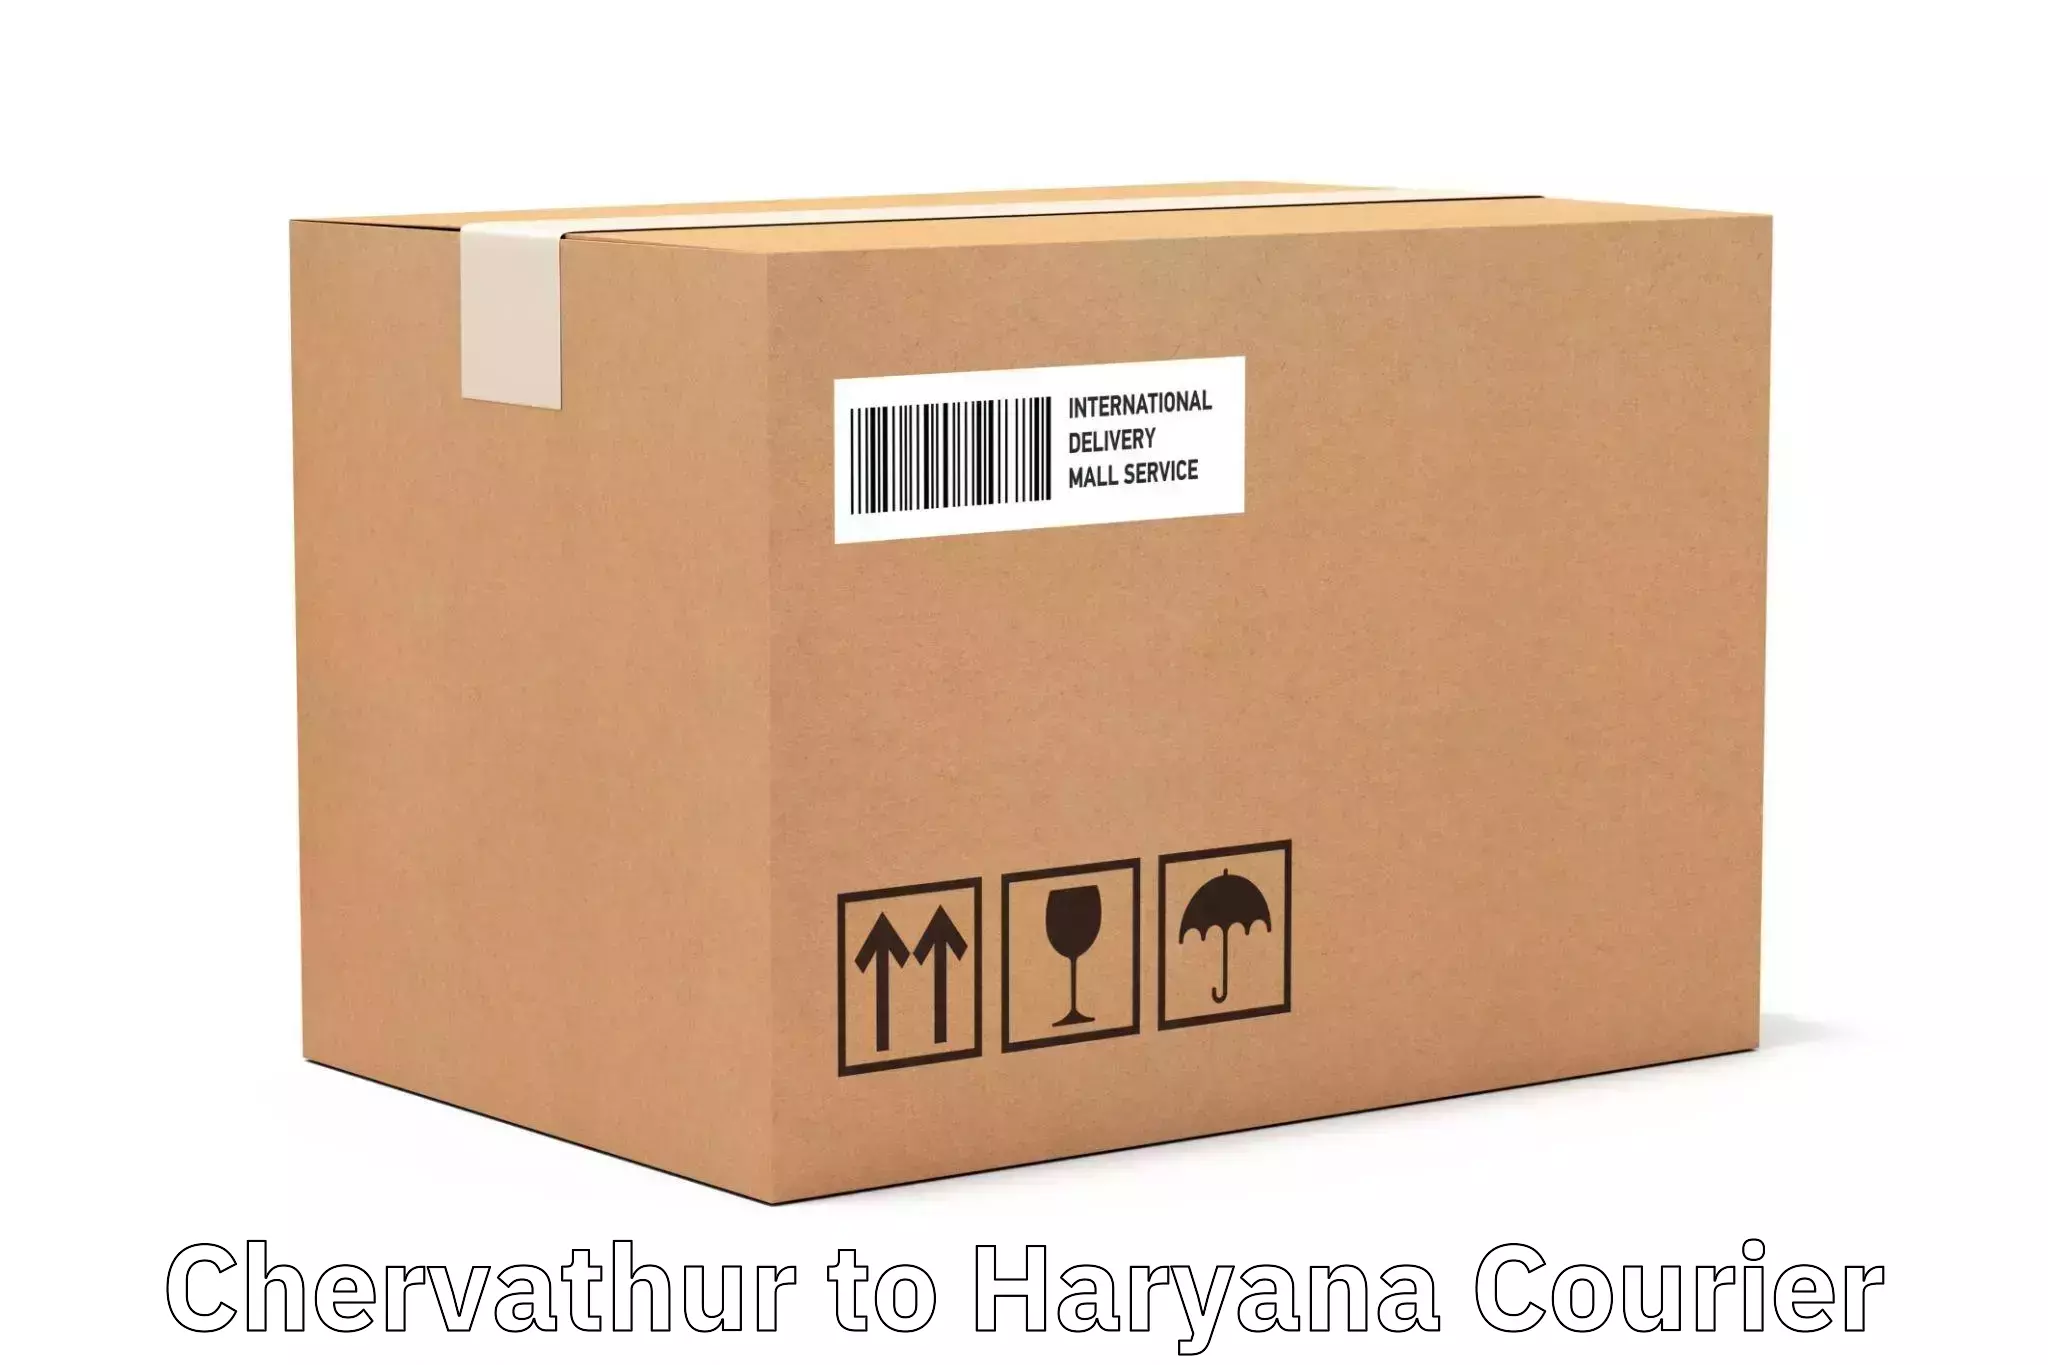 Flexible parcel services Chervathur to Charkhari